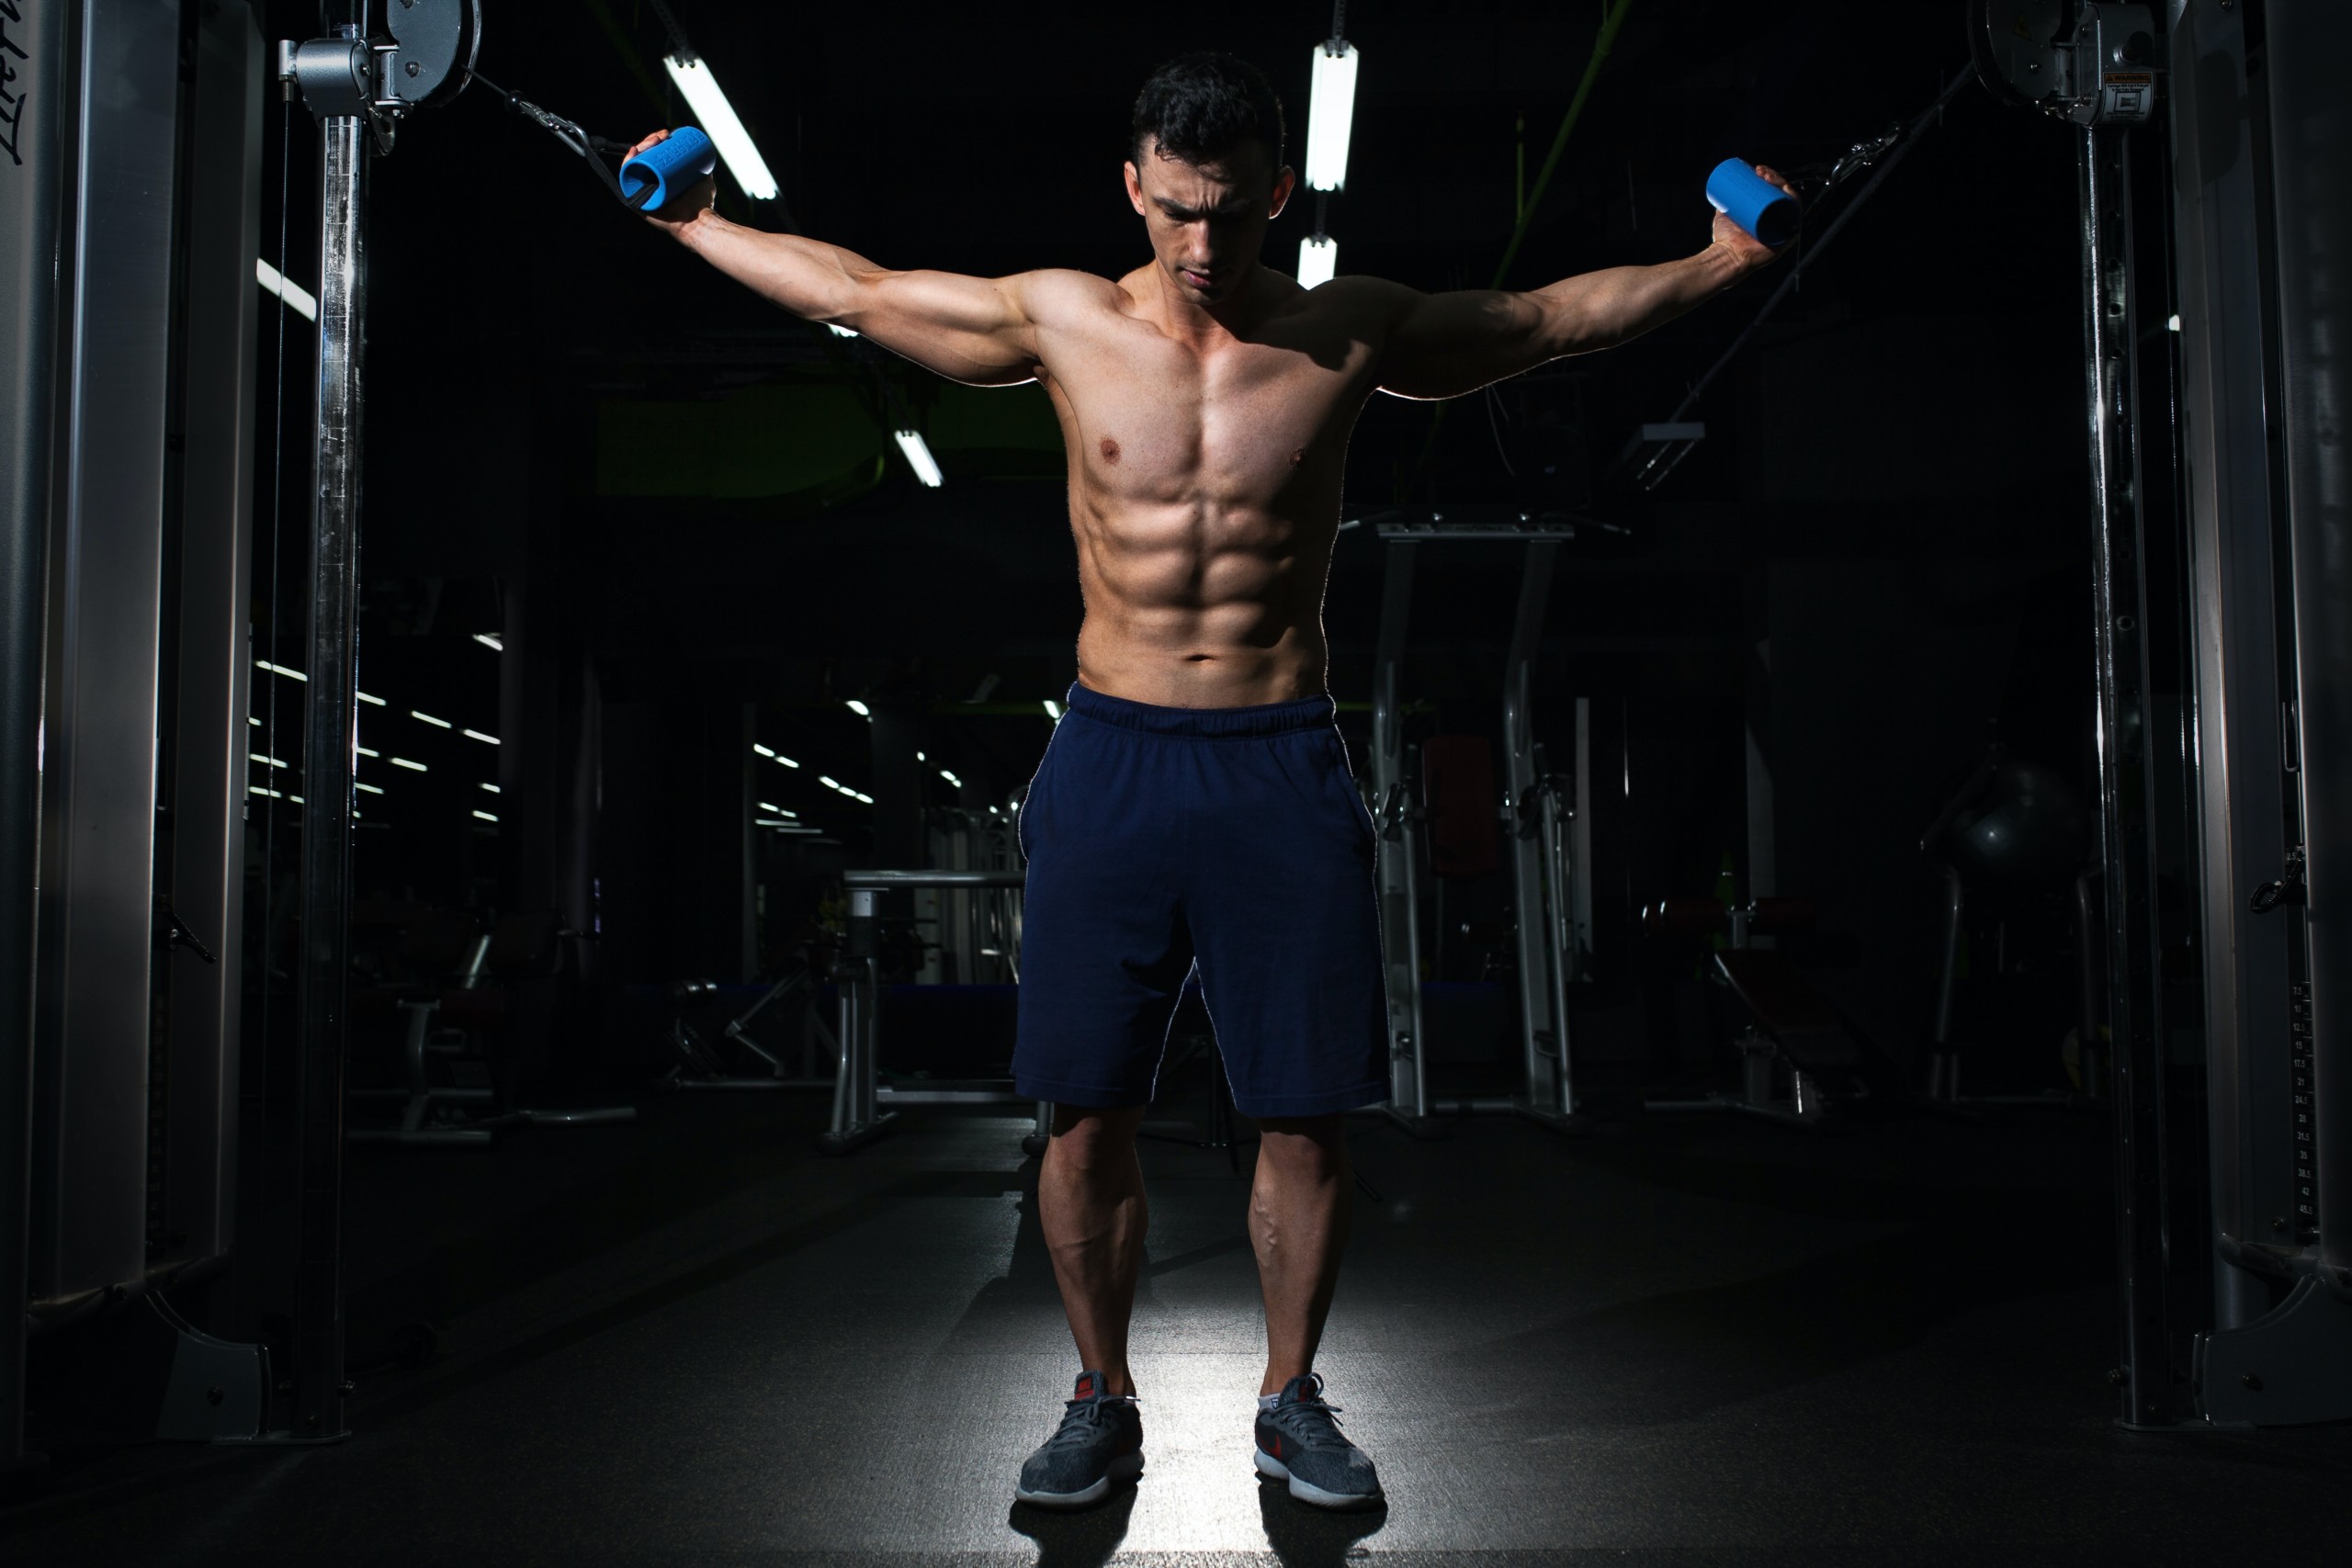 効果的に 懸垂で大胸筋を効かせる3つのトレーニング方法と4つの注意点 Retio Body Design